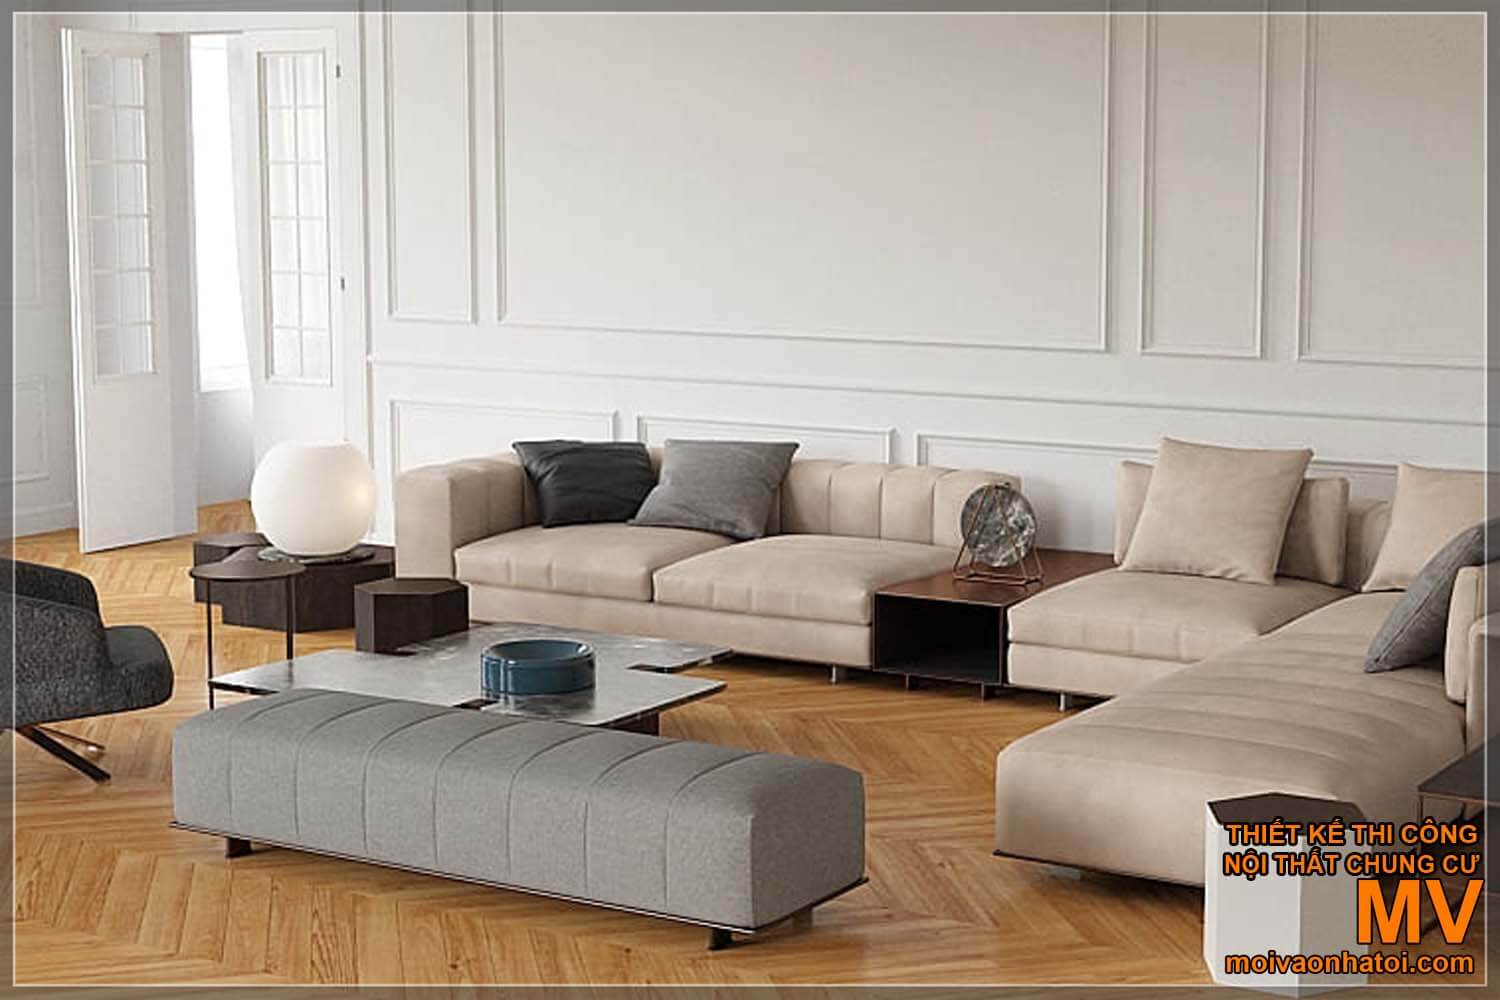 amostras de sofás simples e modernos para casas neoclássicas